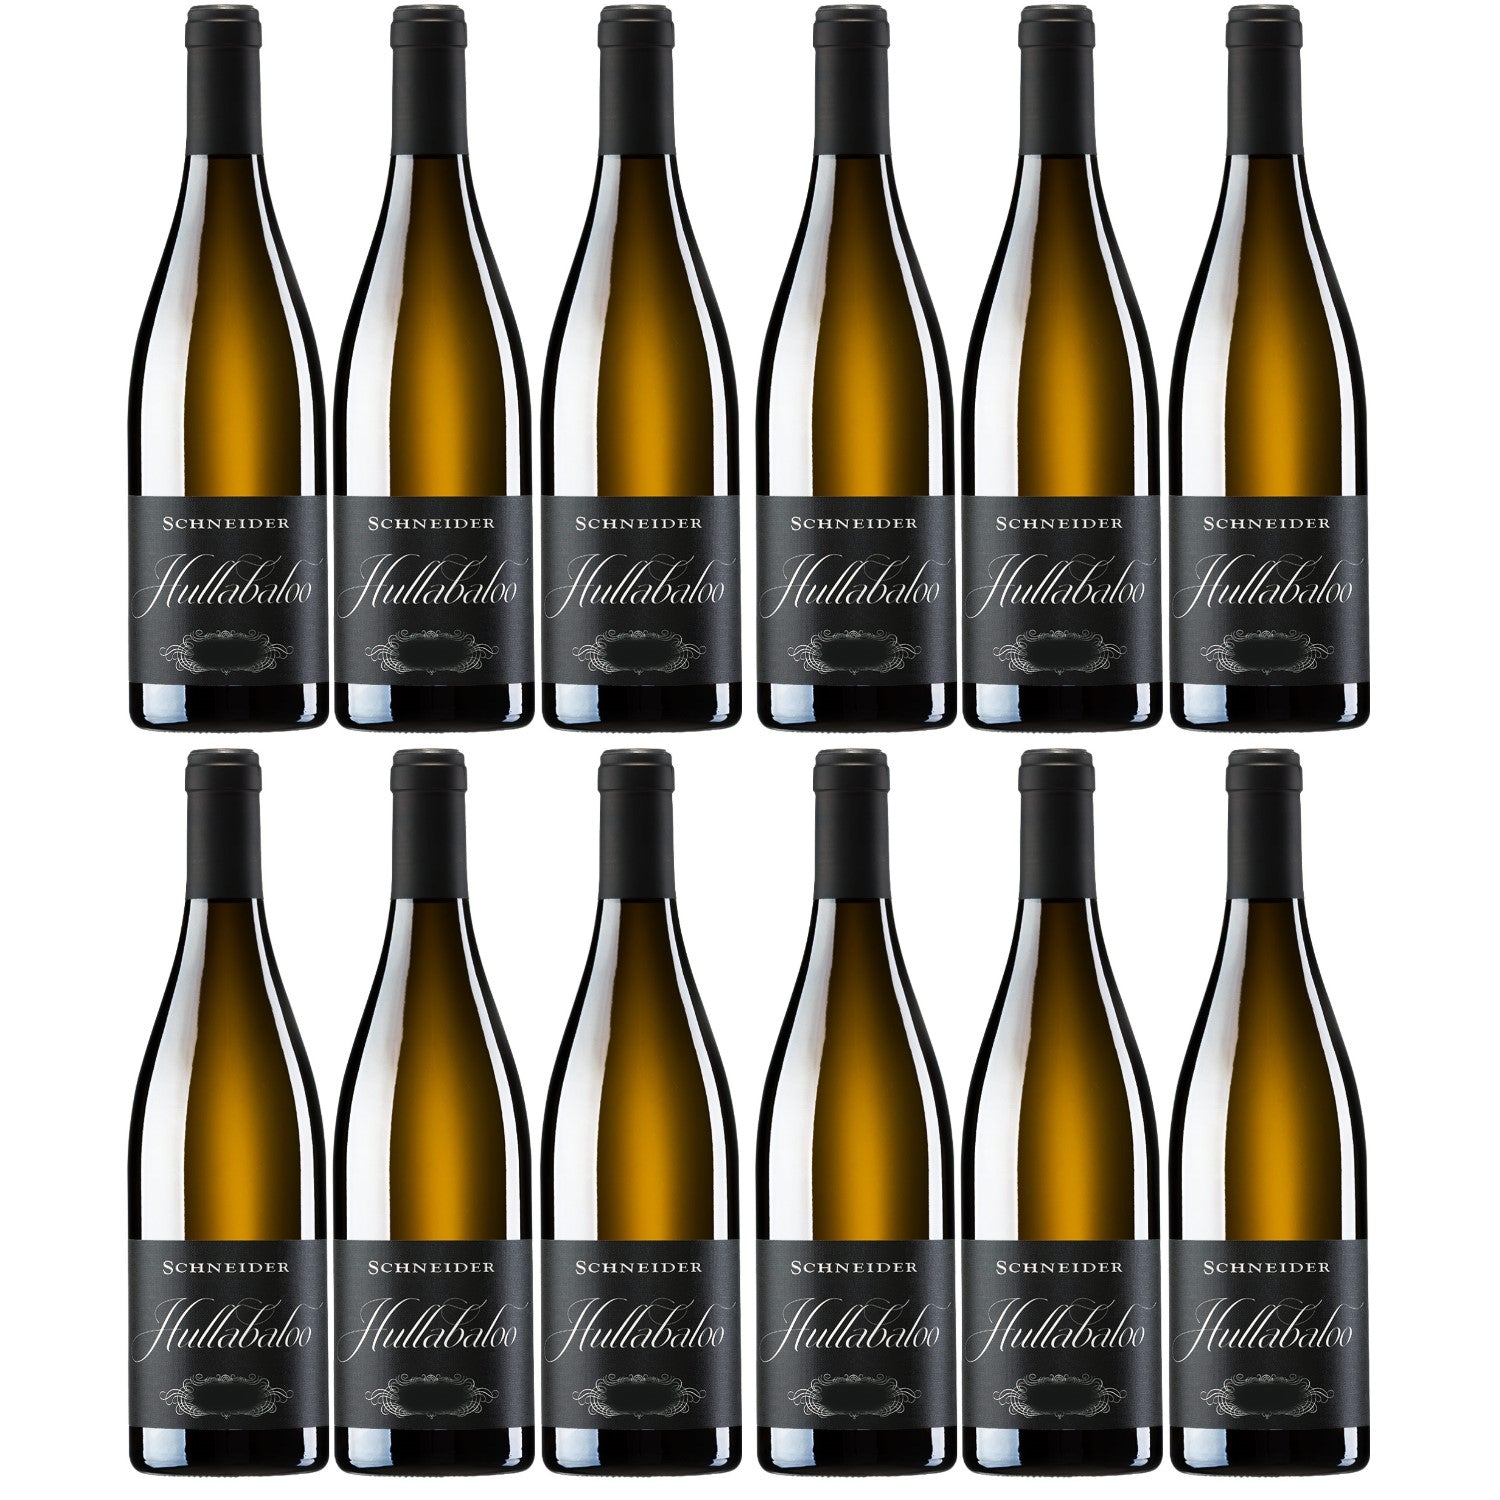 Markus Schneider Hullabaloo Weißwein deutscher Wein trocken Pfalz (12 x 0.75l) - Versanel -